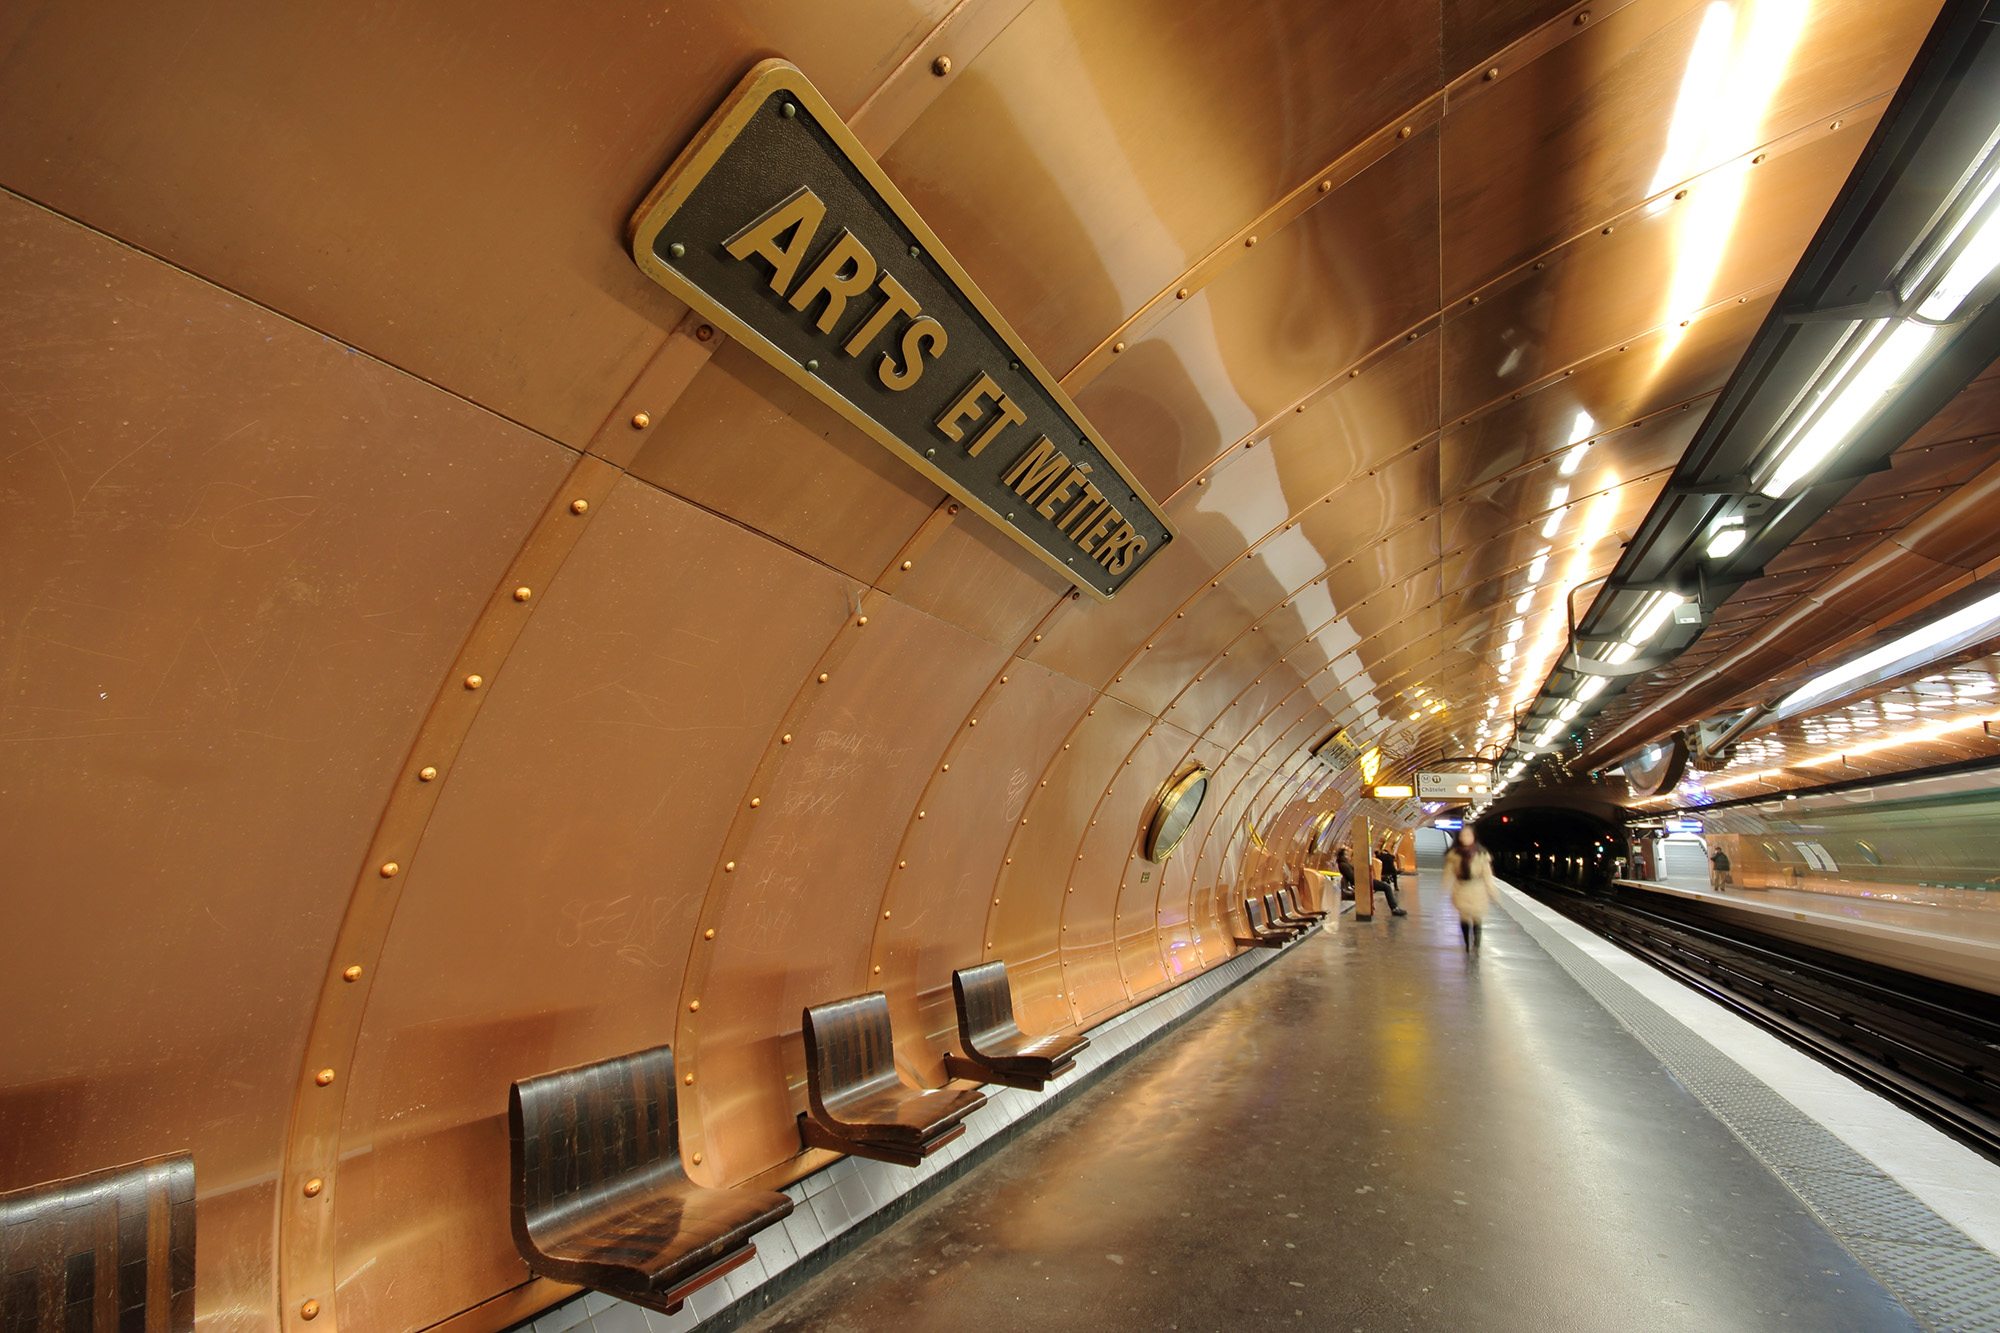 Включи станцию поп. Станция метро Arts et metiers. Станция «Arts et metiers» Париж. Arts et métiers, Париж метро. Станция ар-э-Метье Париж Франция.